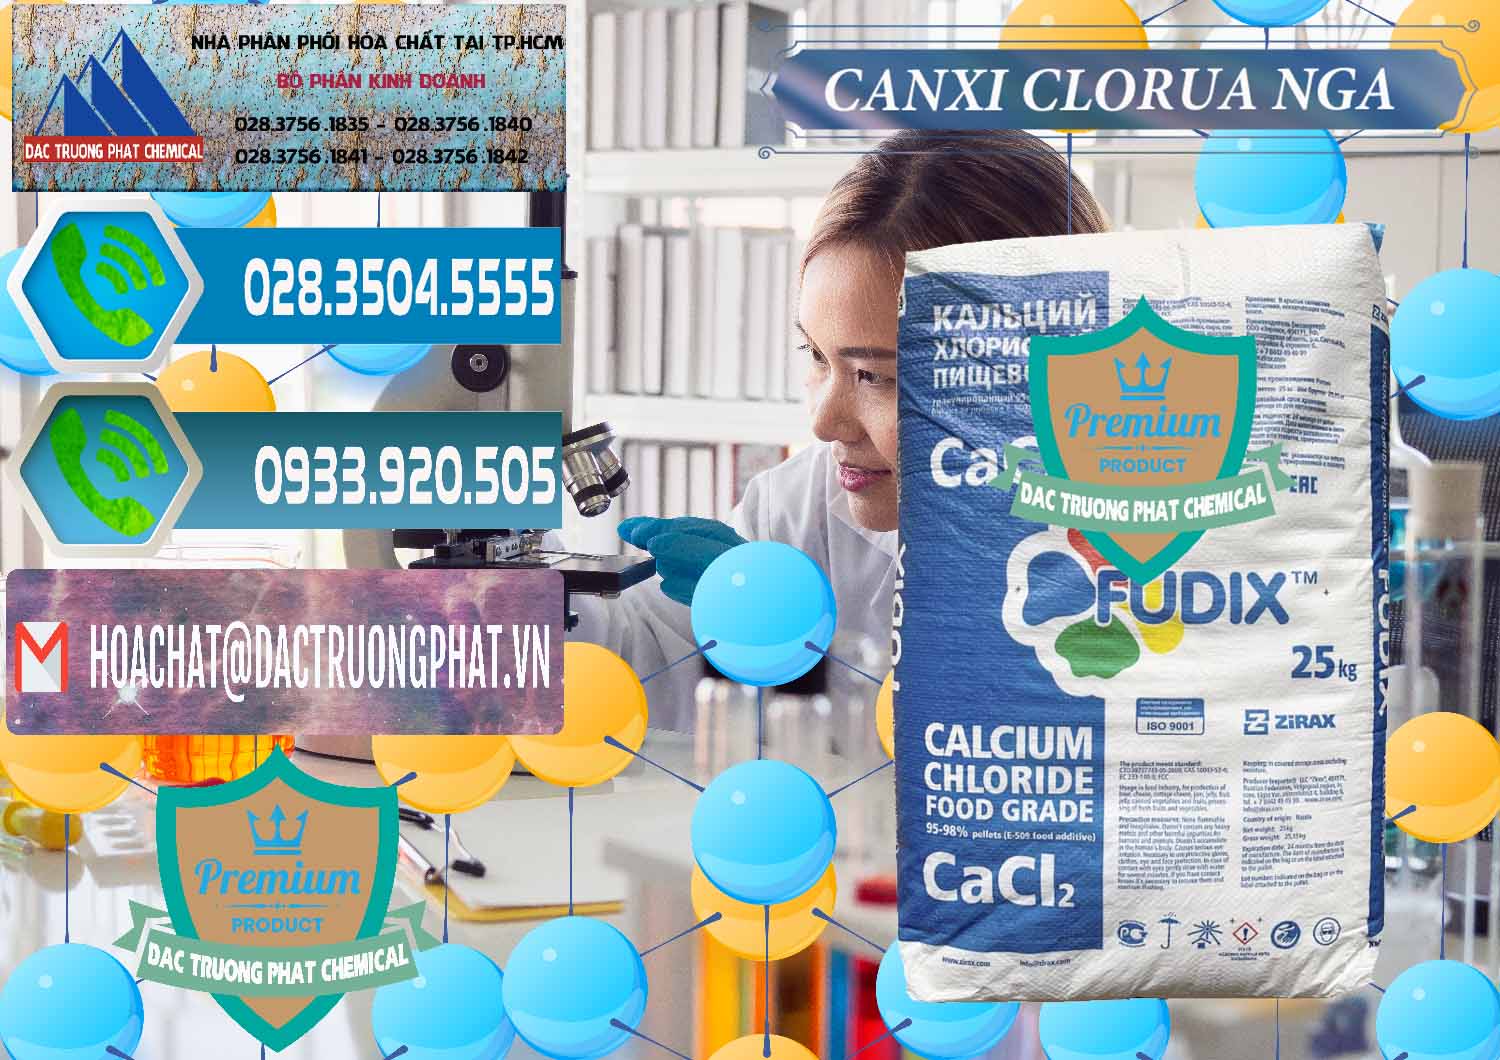 Cty chuyên kinh doanh _ bán CaCl2 – Canxi Clorua Nga Russia - 0430 - Đơn vị cung ứng ( phân phối ) hóa chất tại TP.HCM - congtyhoachat.net